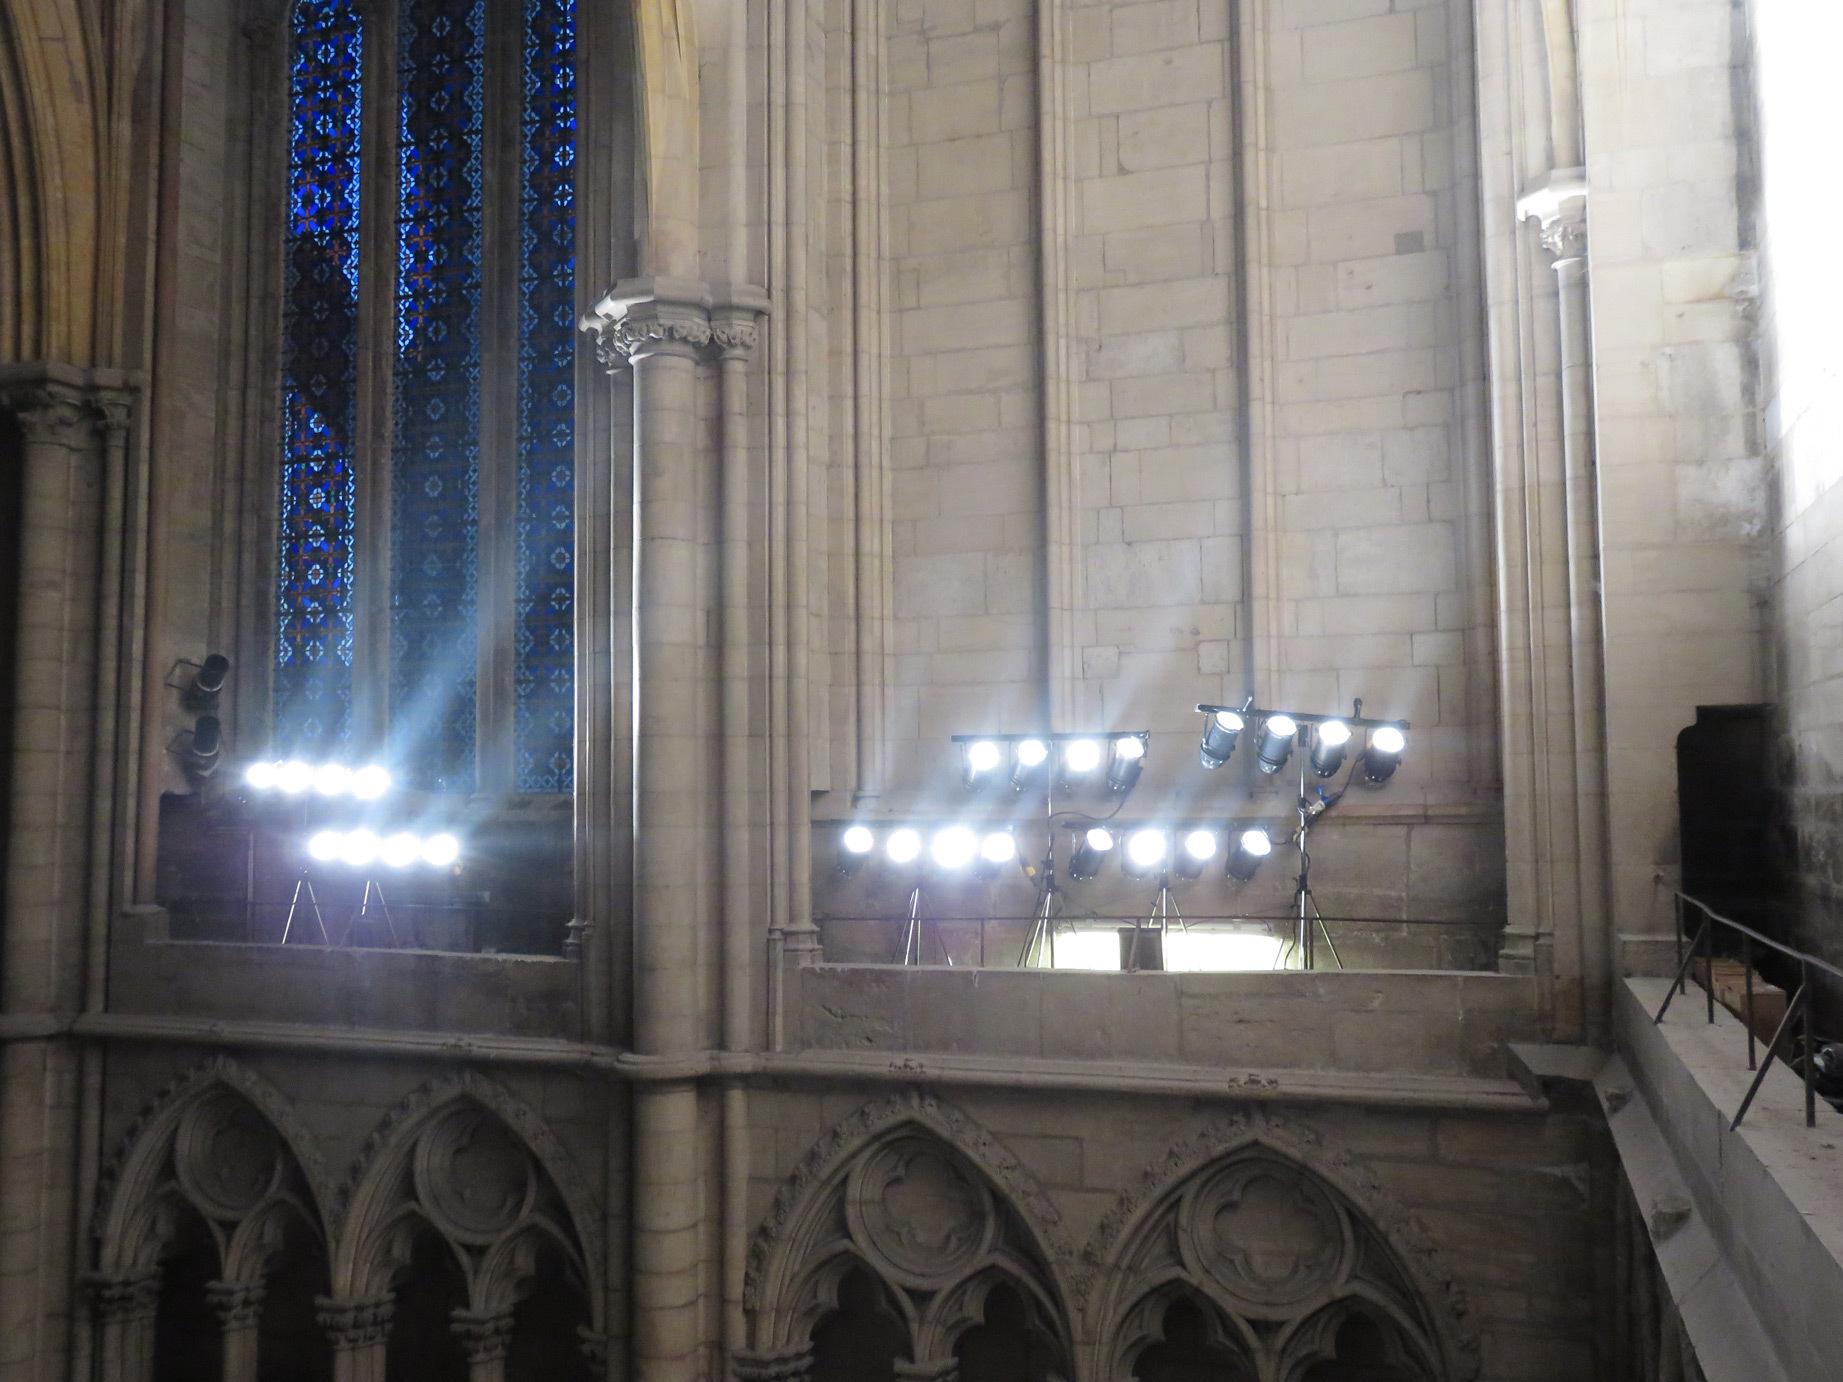 Implantation lumière en intérieur - Évolutions, cathédrale Saint-Jean - Fête des lumières 2016, Lyon, France